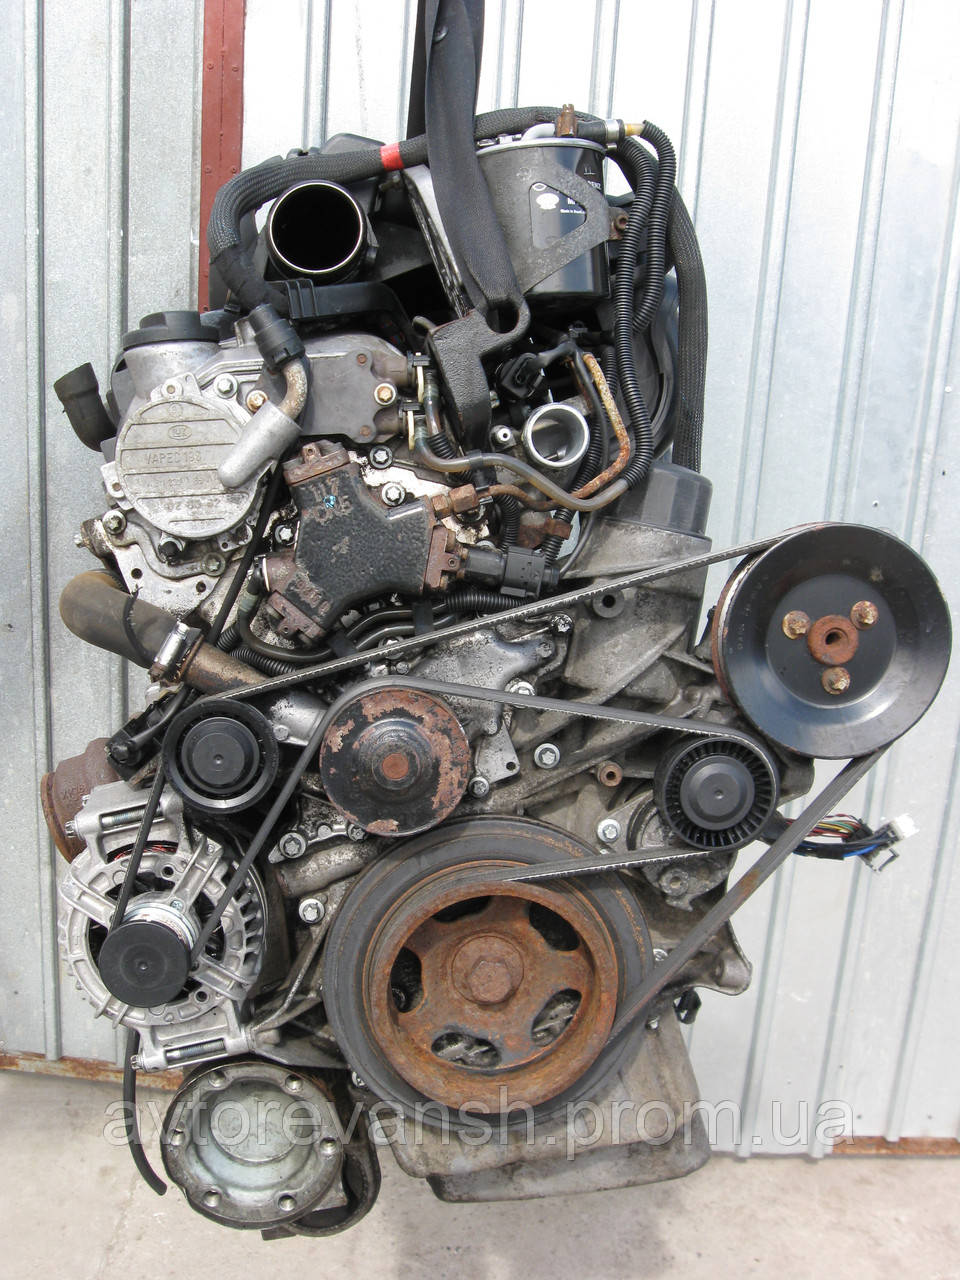 Vito двигатель. Двигатель Мерседес Вито 638 2.2. Двигатель CDI 2.2 дизель Мерседес Vito. Вито 638 2.3 дизель ремень. Приводной ремень Вито 638 2.2 CDI.